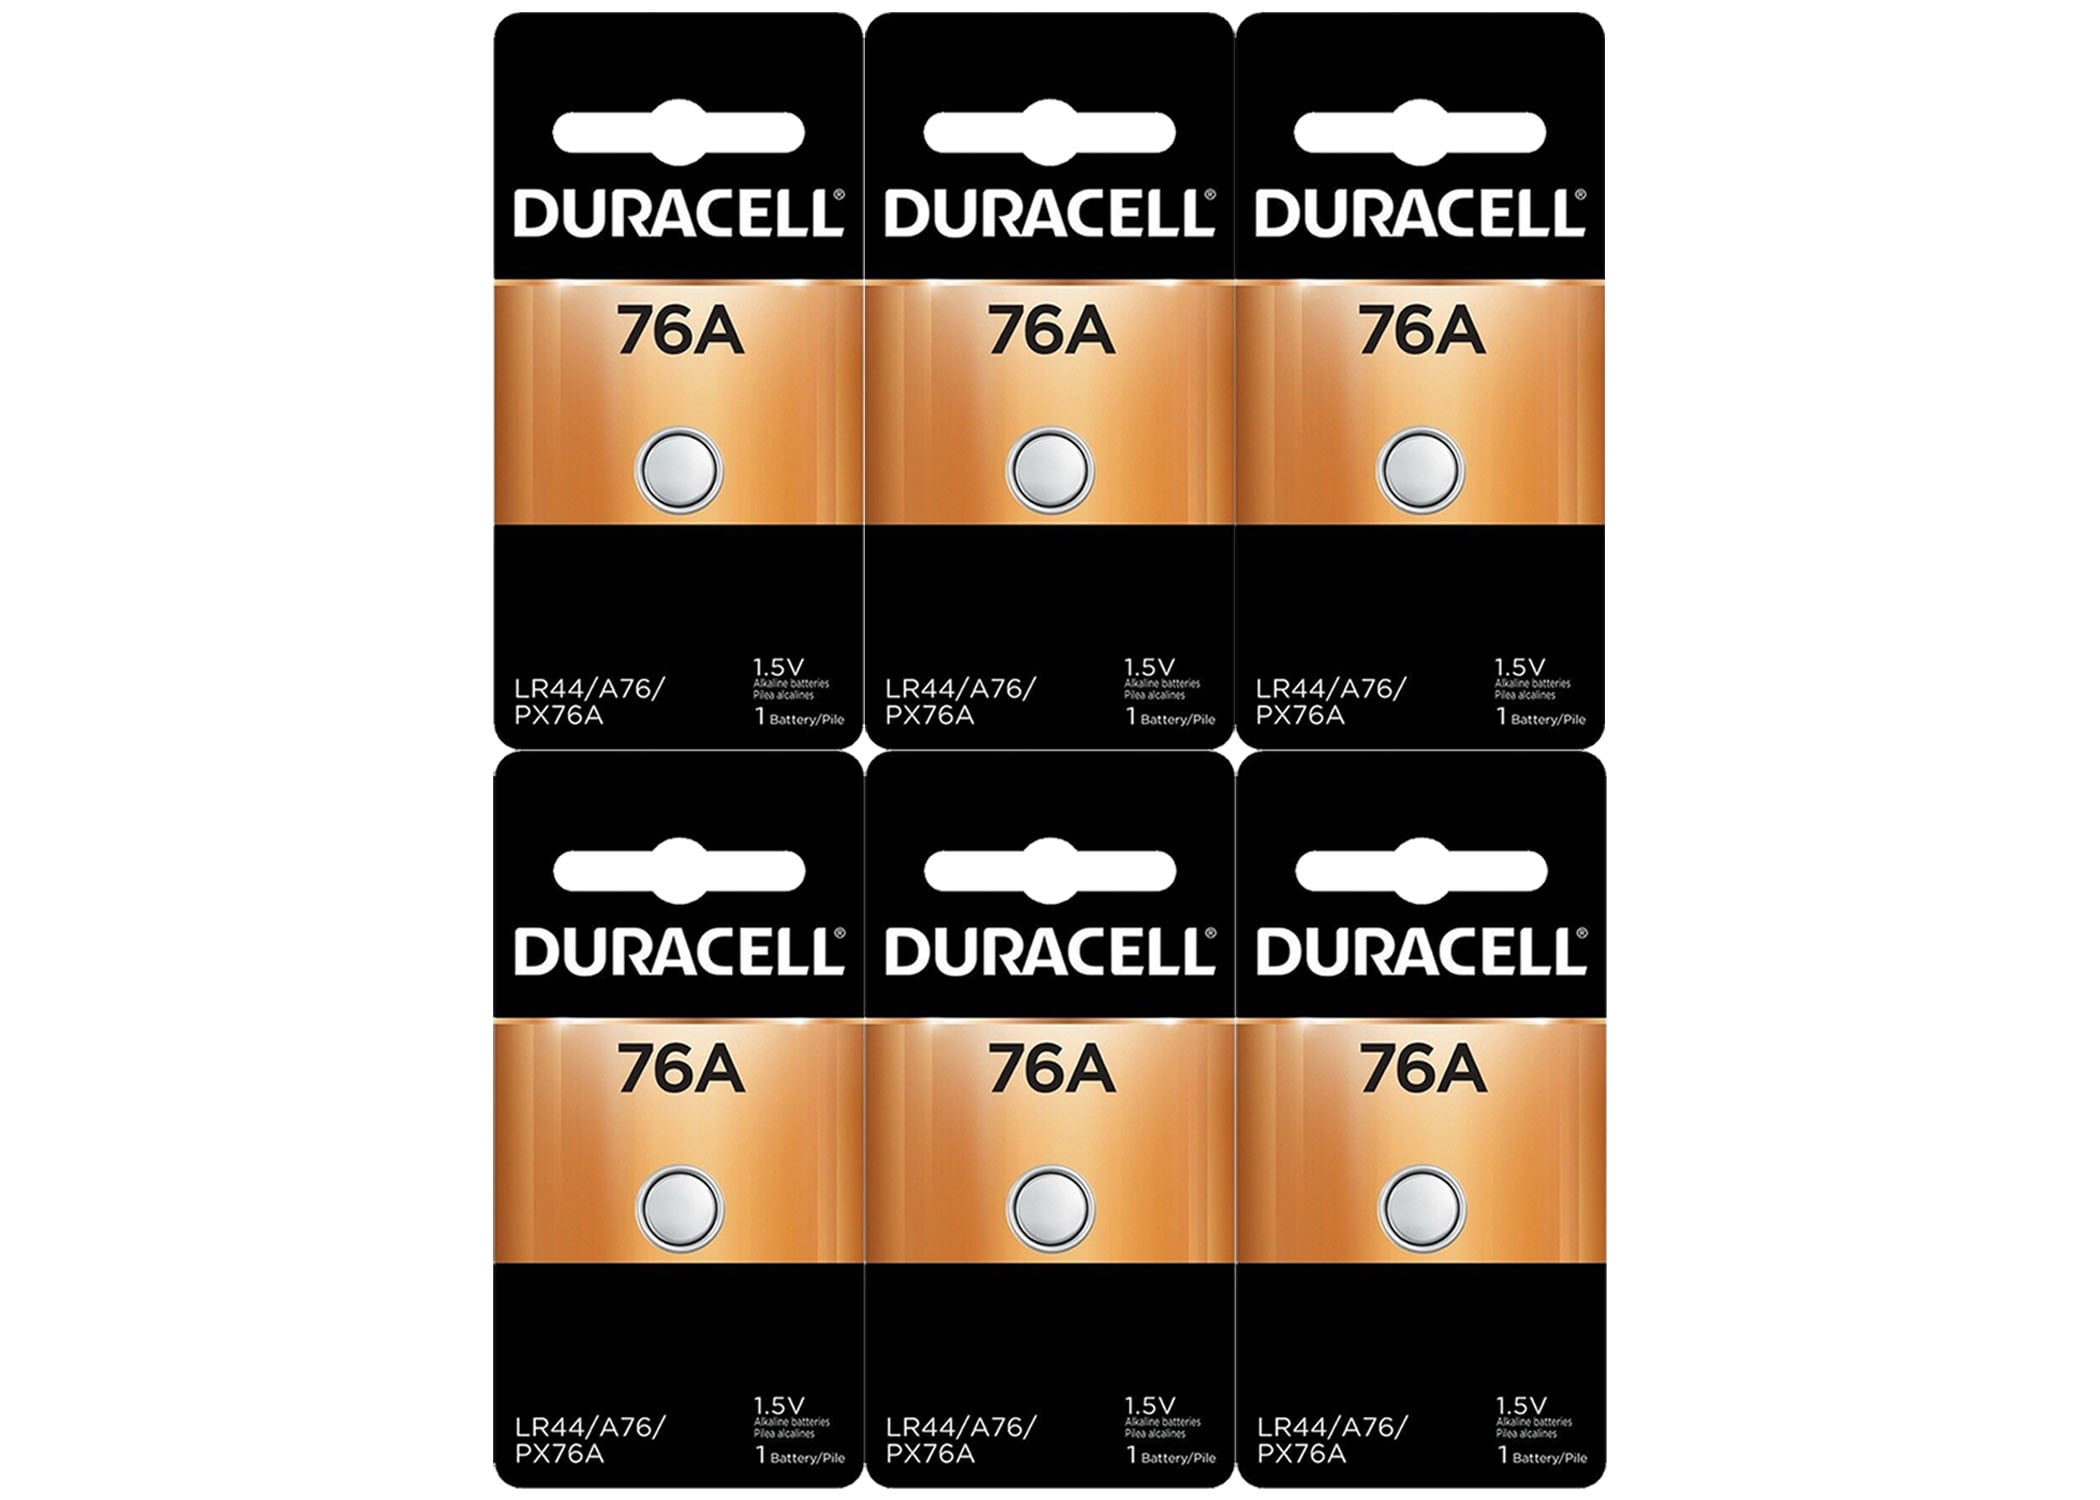 Duracell 76A LR44 Duralock 1.5V Button Cell Battery 12 Pack